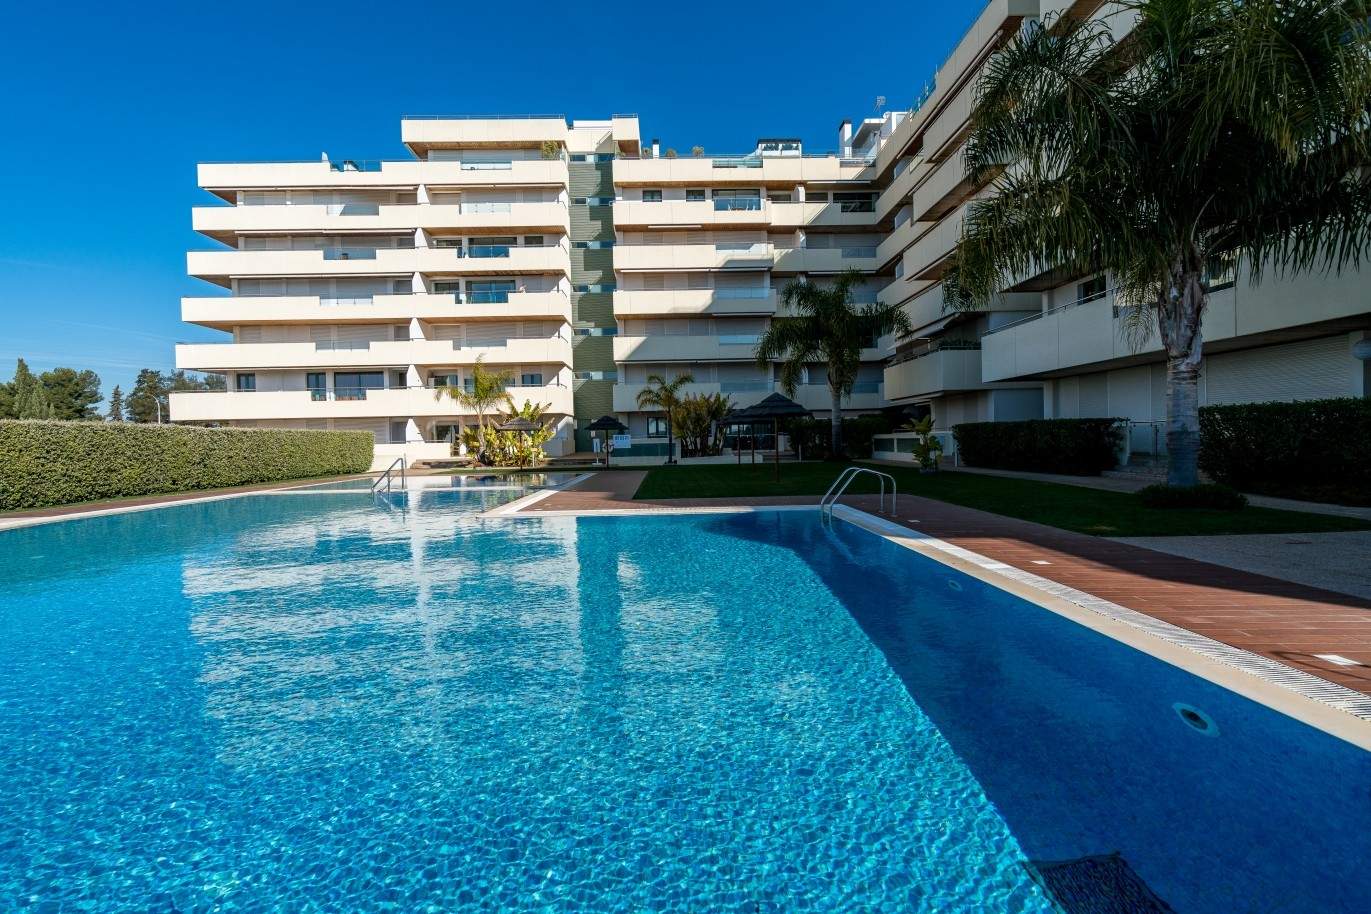 Wohnung zum Verkauf mit Schwimmbad, nah am Strand, Marina Vilamoura, Algarve, Portugal_74095